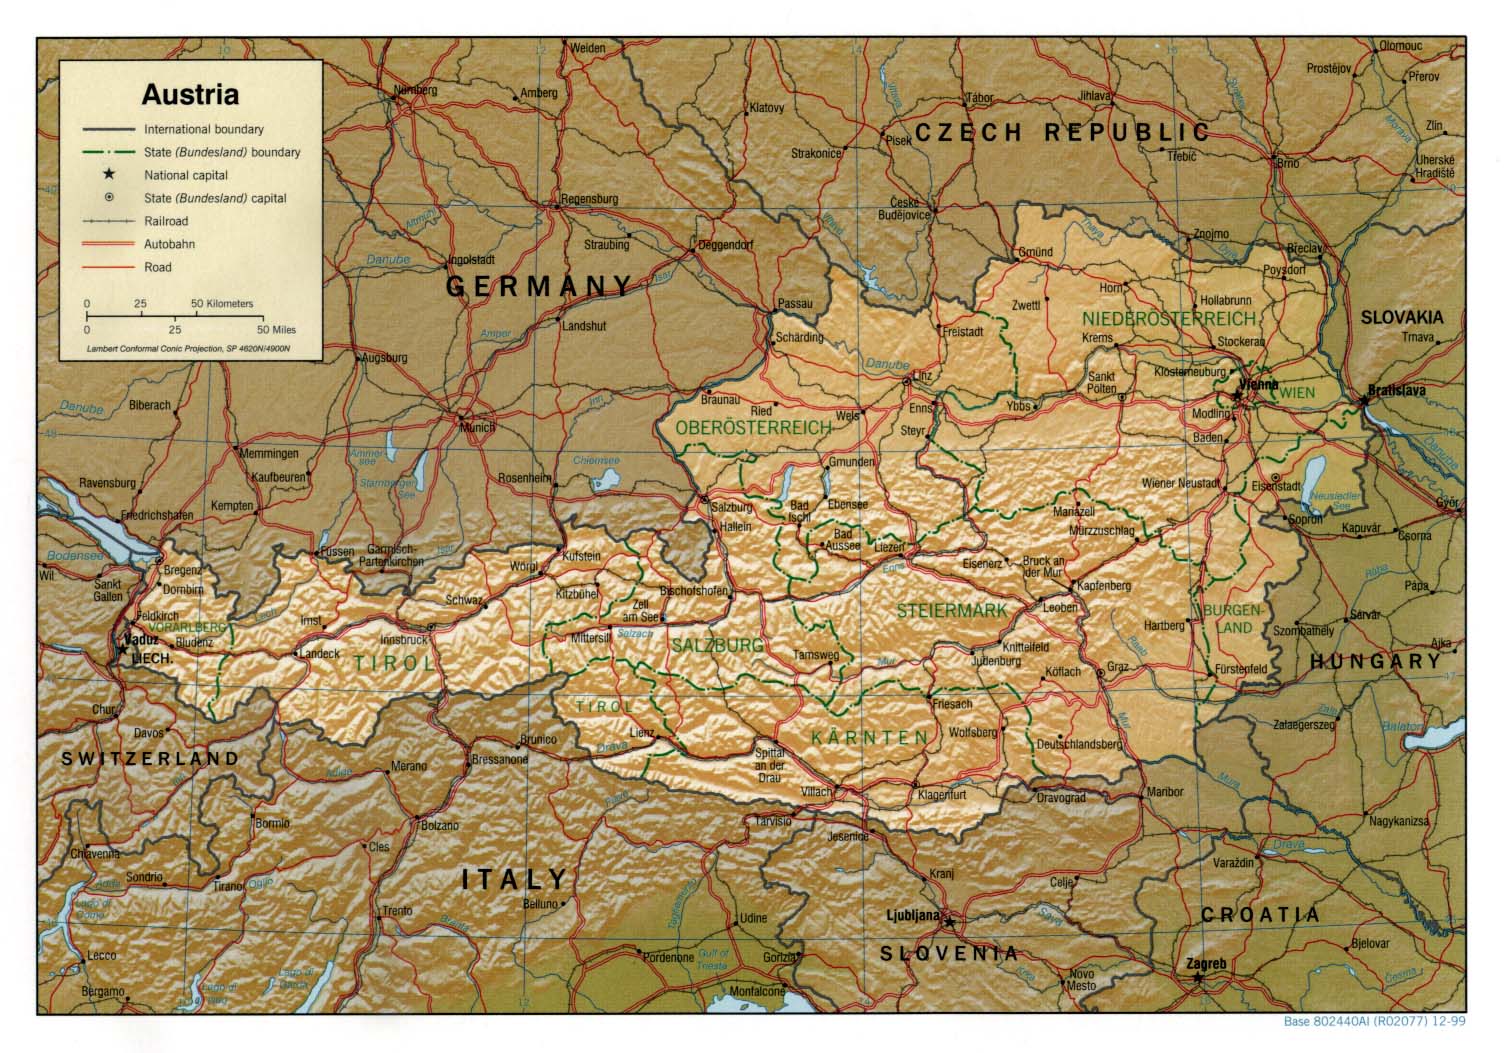 online ausztria térkép Ausztria térkép lap   Megbízható válaszok profiktól online ausztria térkép